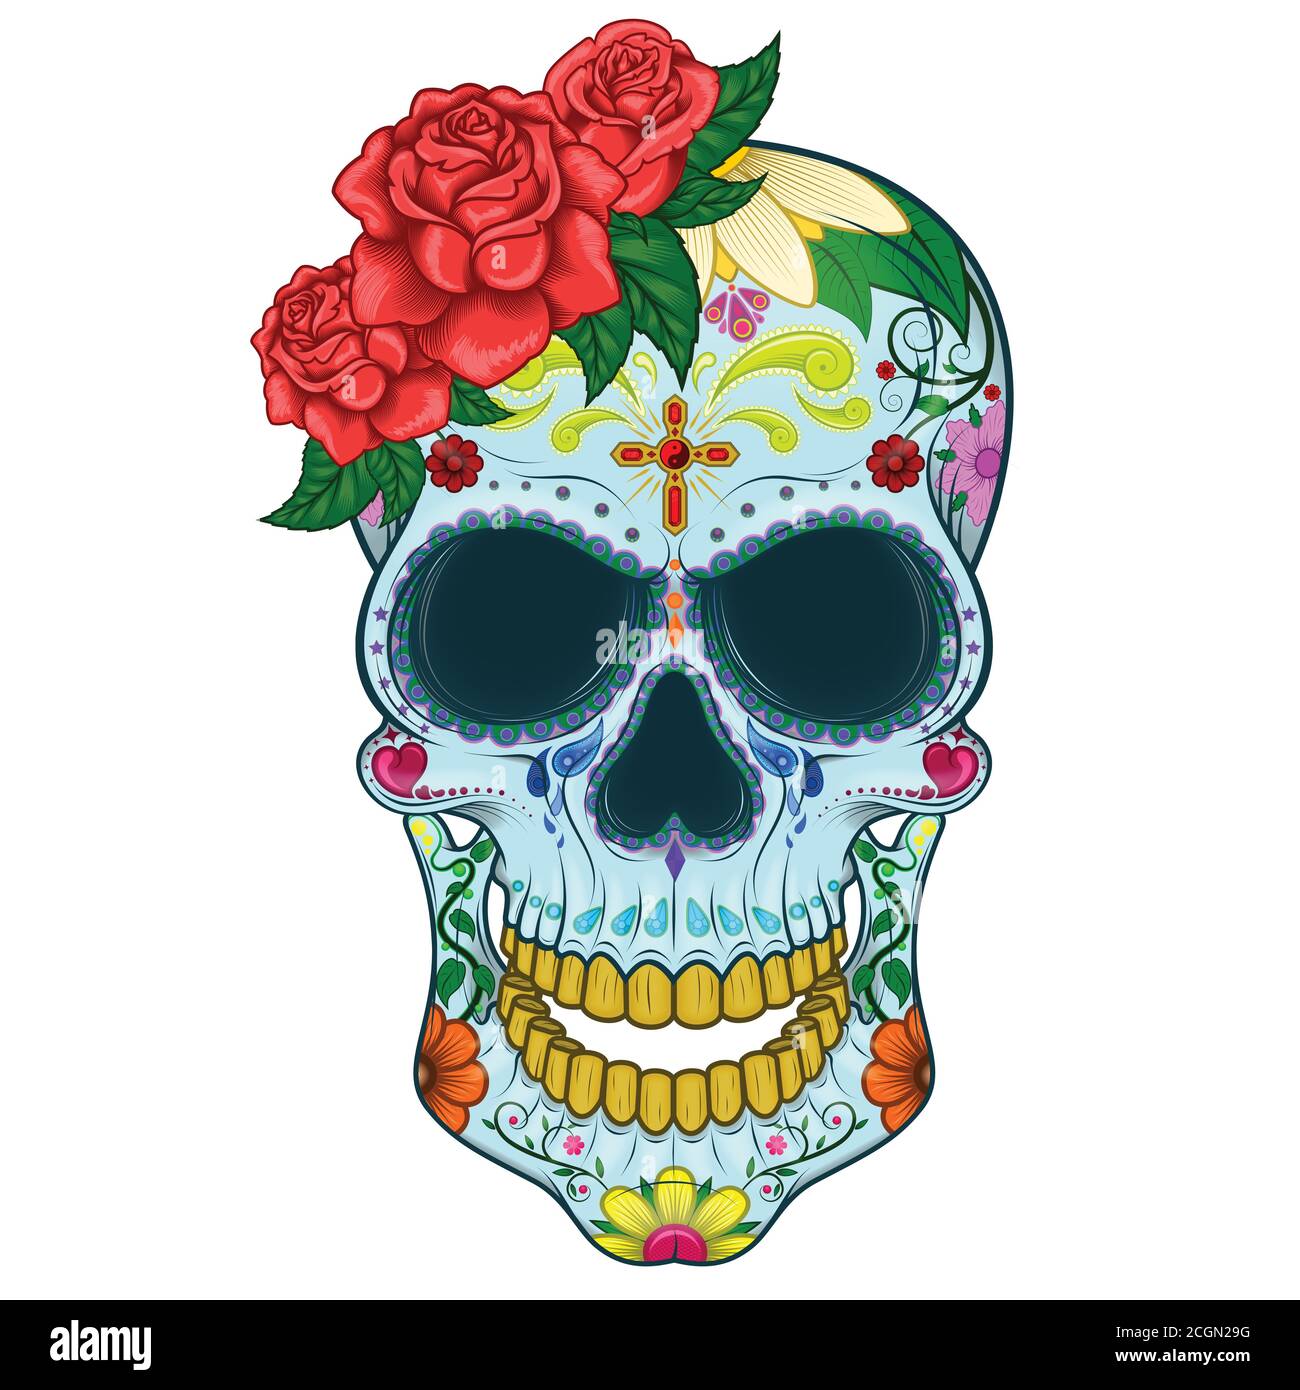 Dessin vectoriel du crâne mexicain, en commémoration du jour des morts, sur fond blanc Illustration de Vecteur